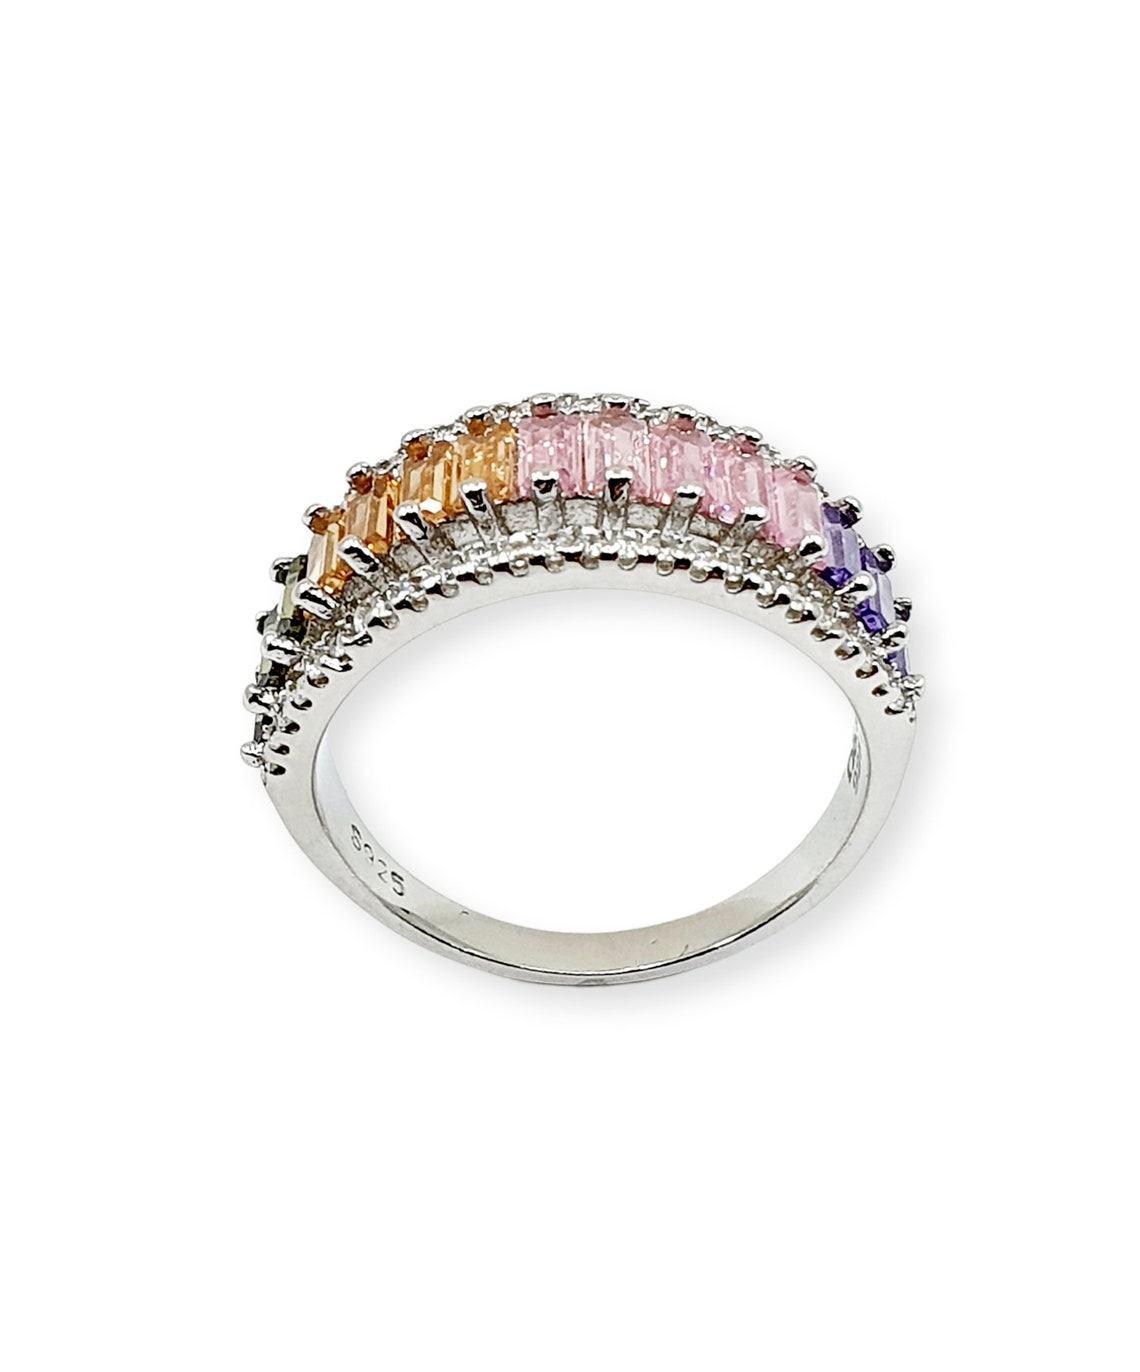 Multi Gemstone Handmade Ring Gift for Her Green Pink | Etsy